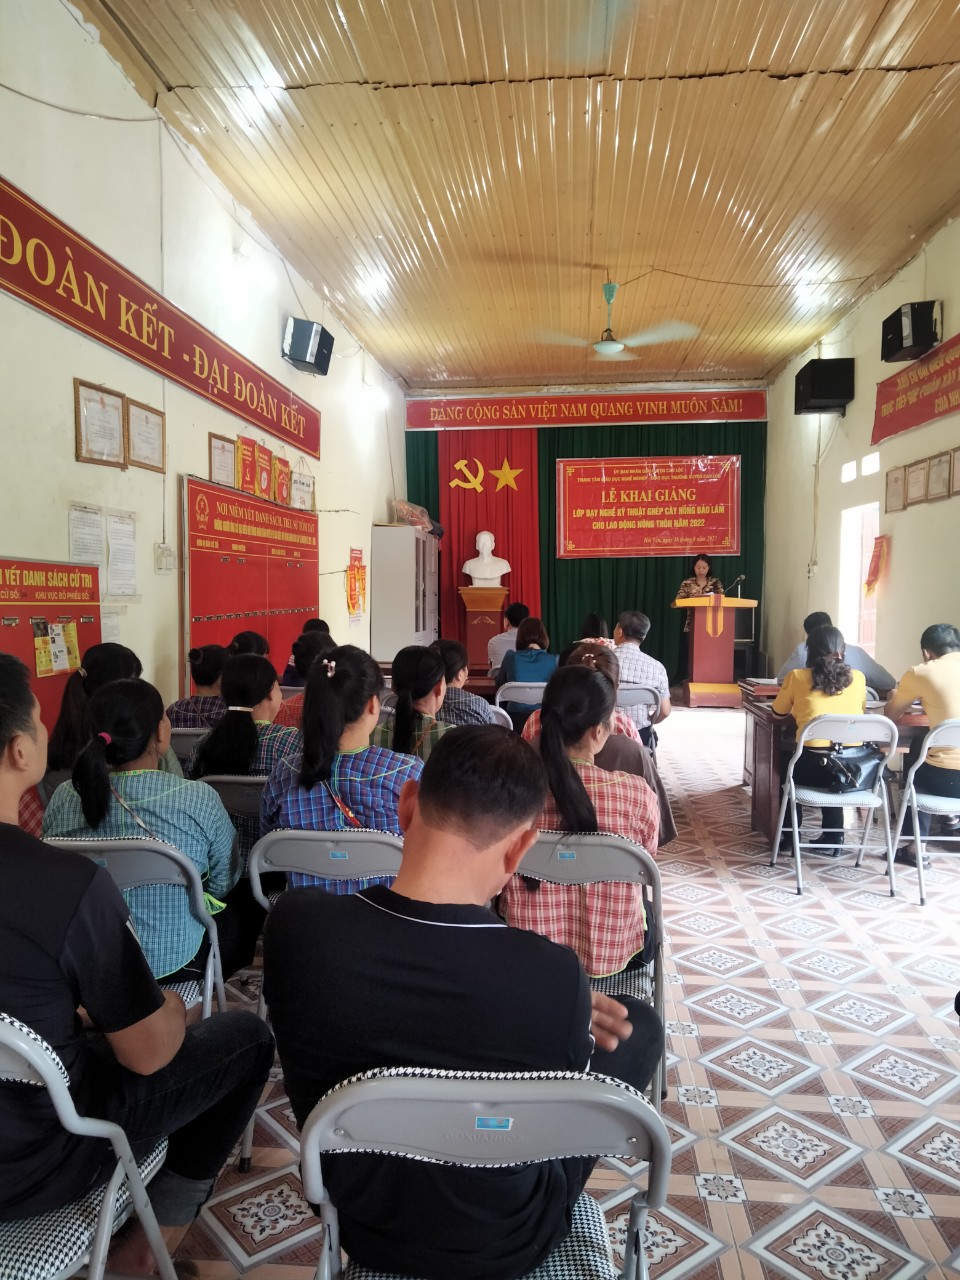 Đồng chí Nguyễn Thị Hương- Phó Giám đốc Trung tâm giáo dục nghề nghiệp - Giáo dục thường xuyên huyện Cao lộc phát biểu tại buổi khai giảng